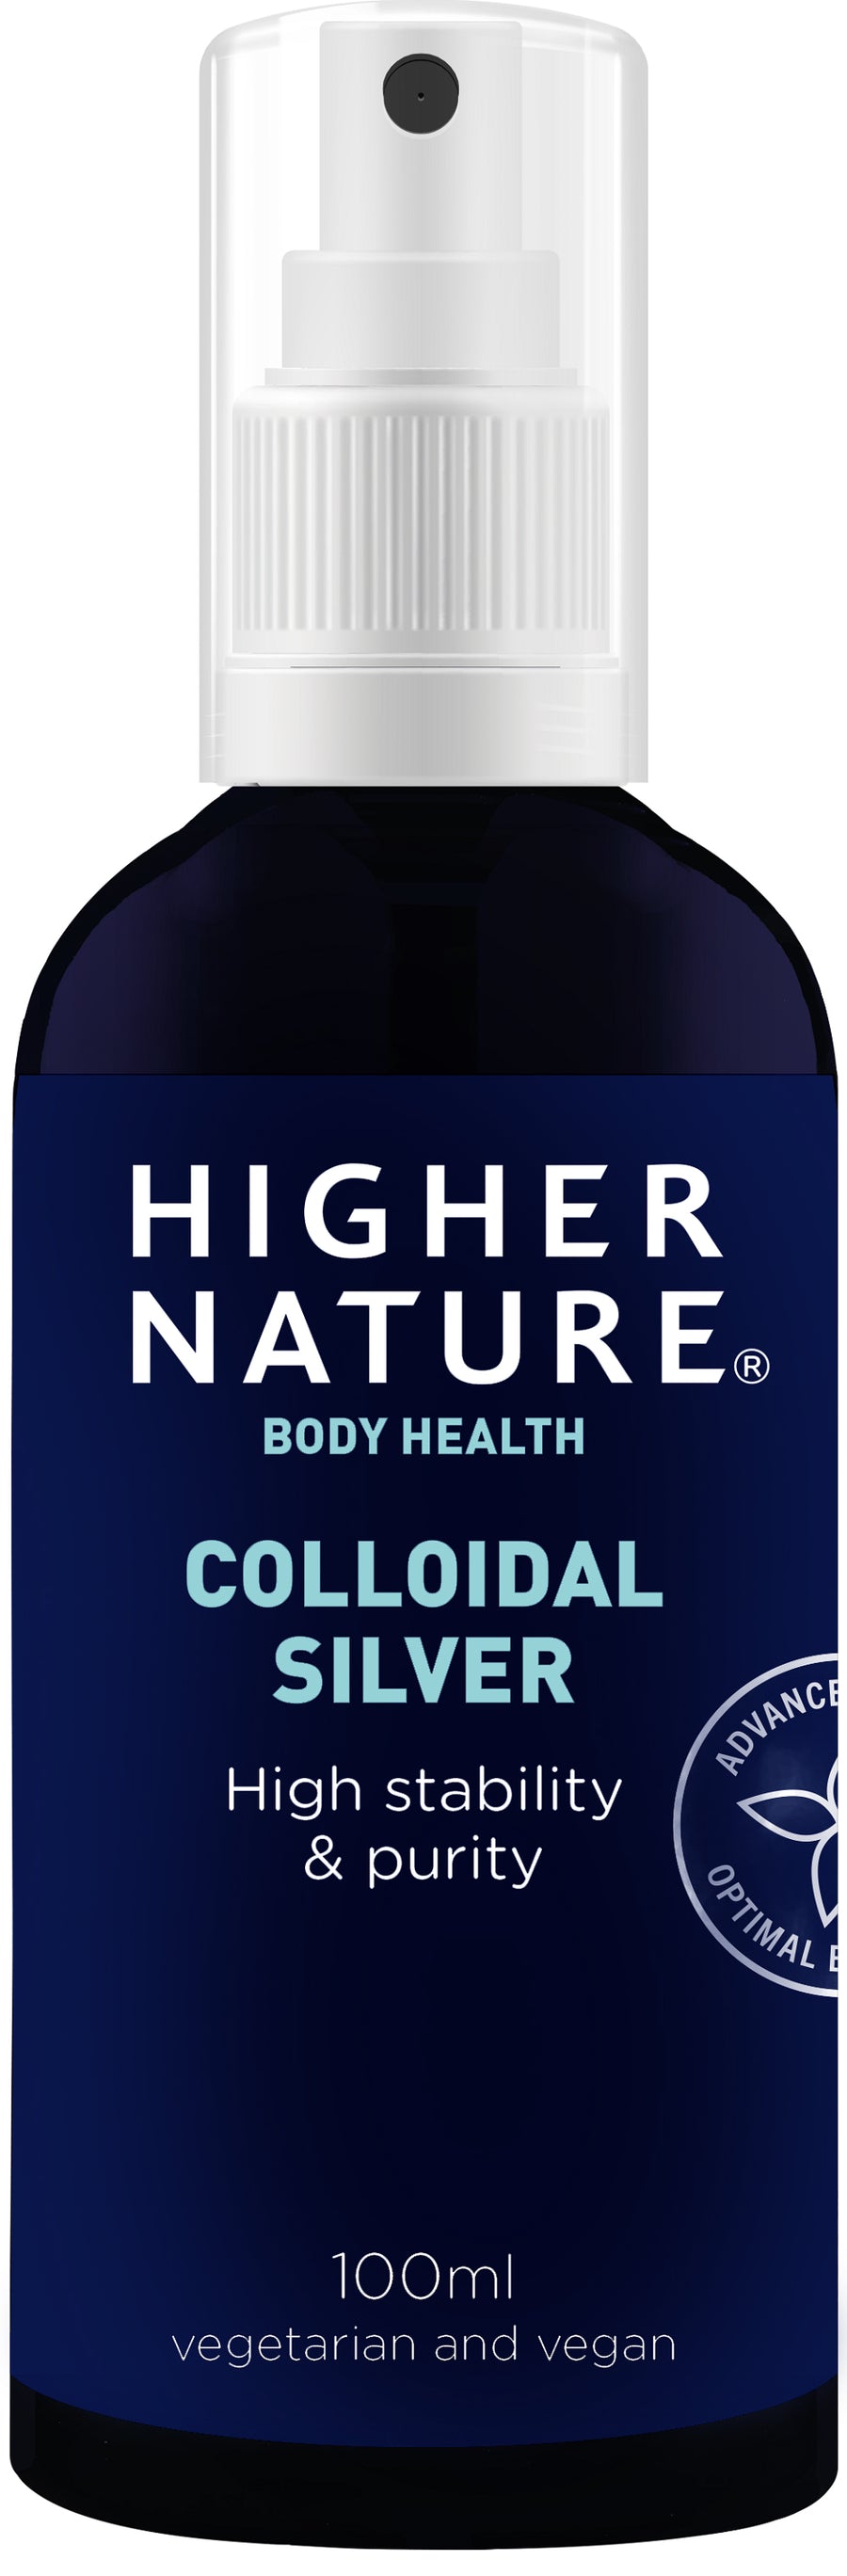 Higher Nature Colloidal Silver Spray 100ml